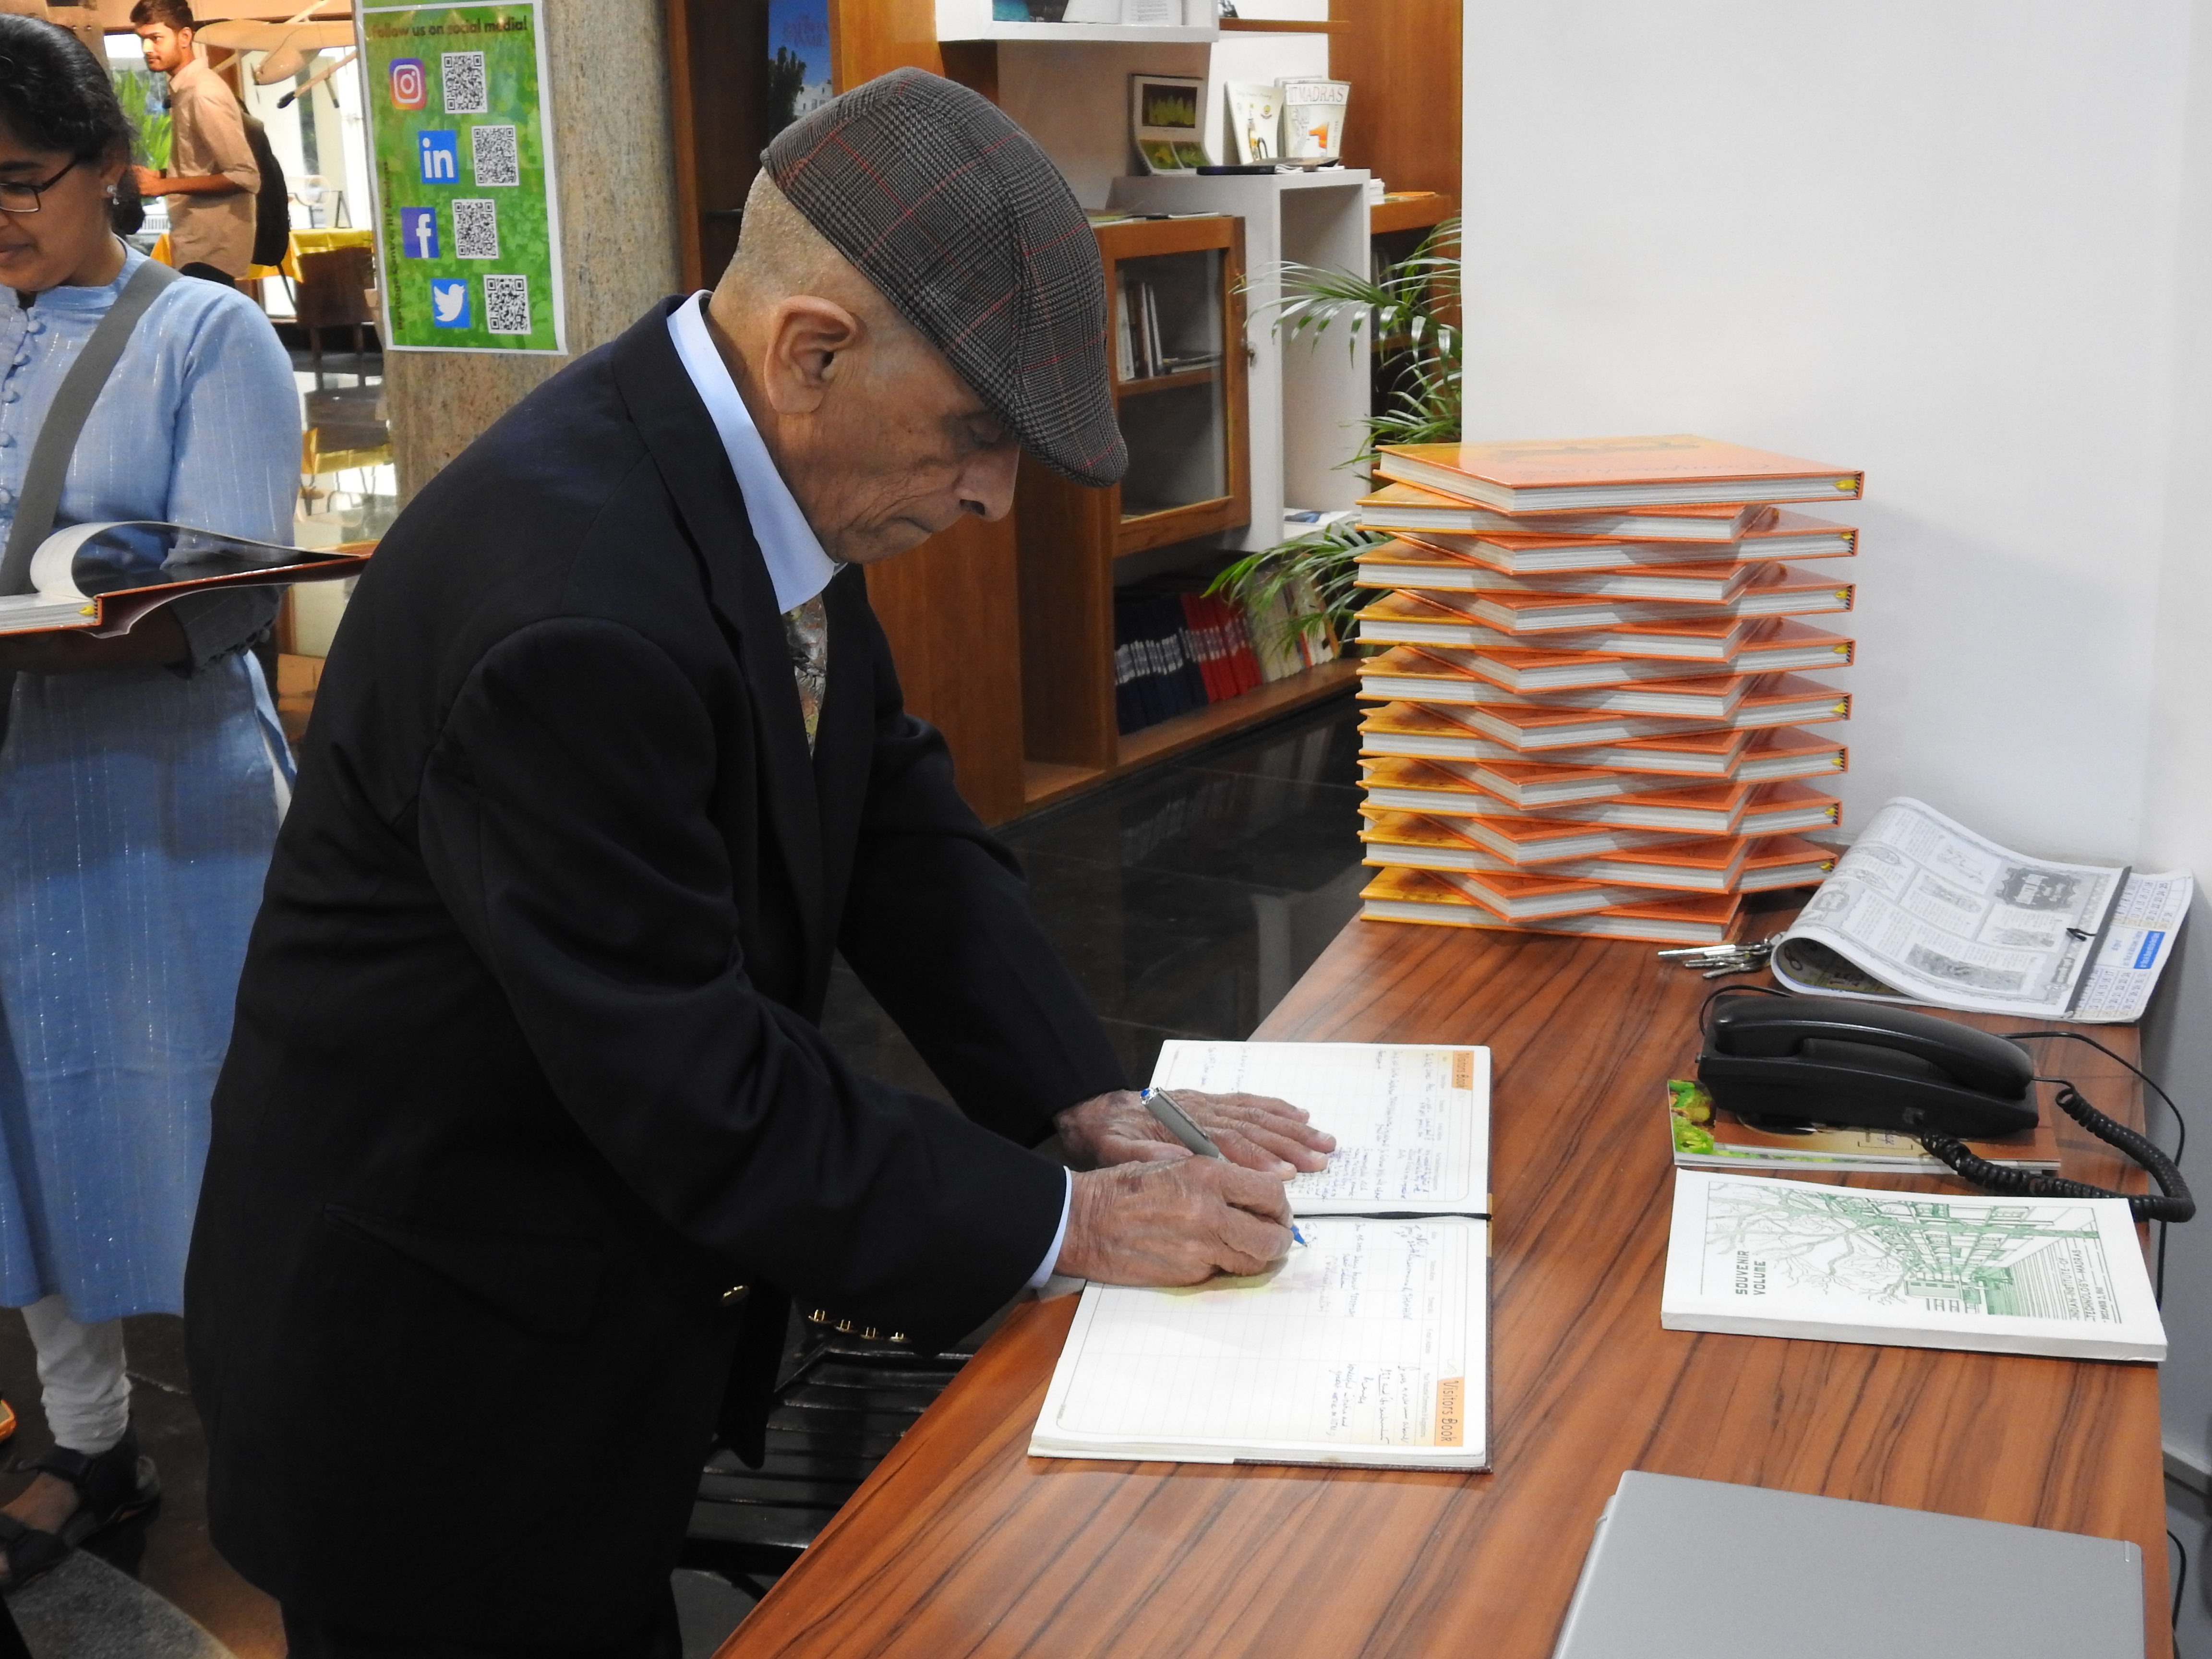 Mr. S. S. Mani Venkata signs the Visitors' Book